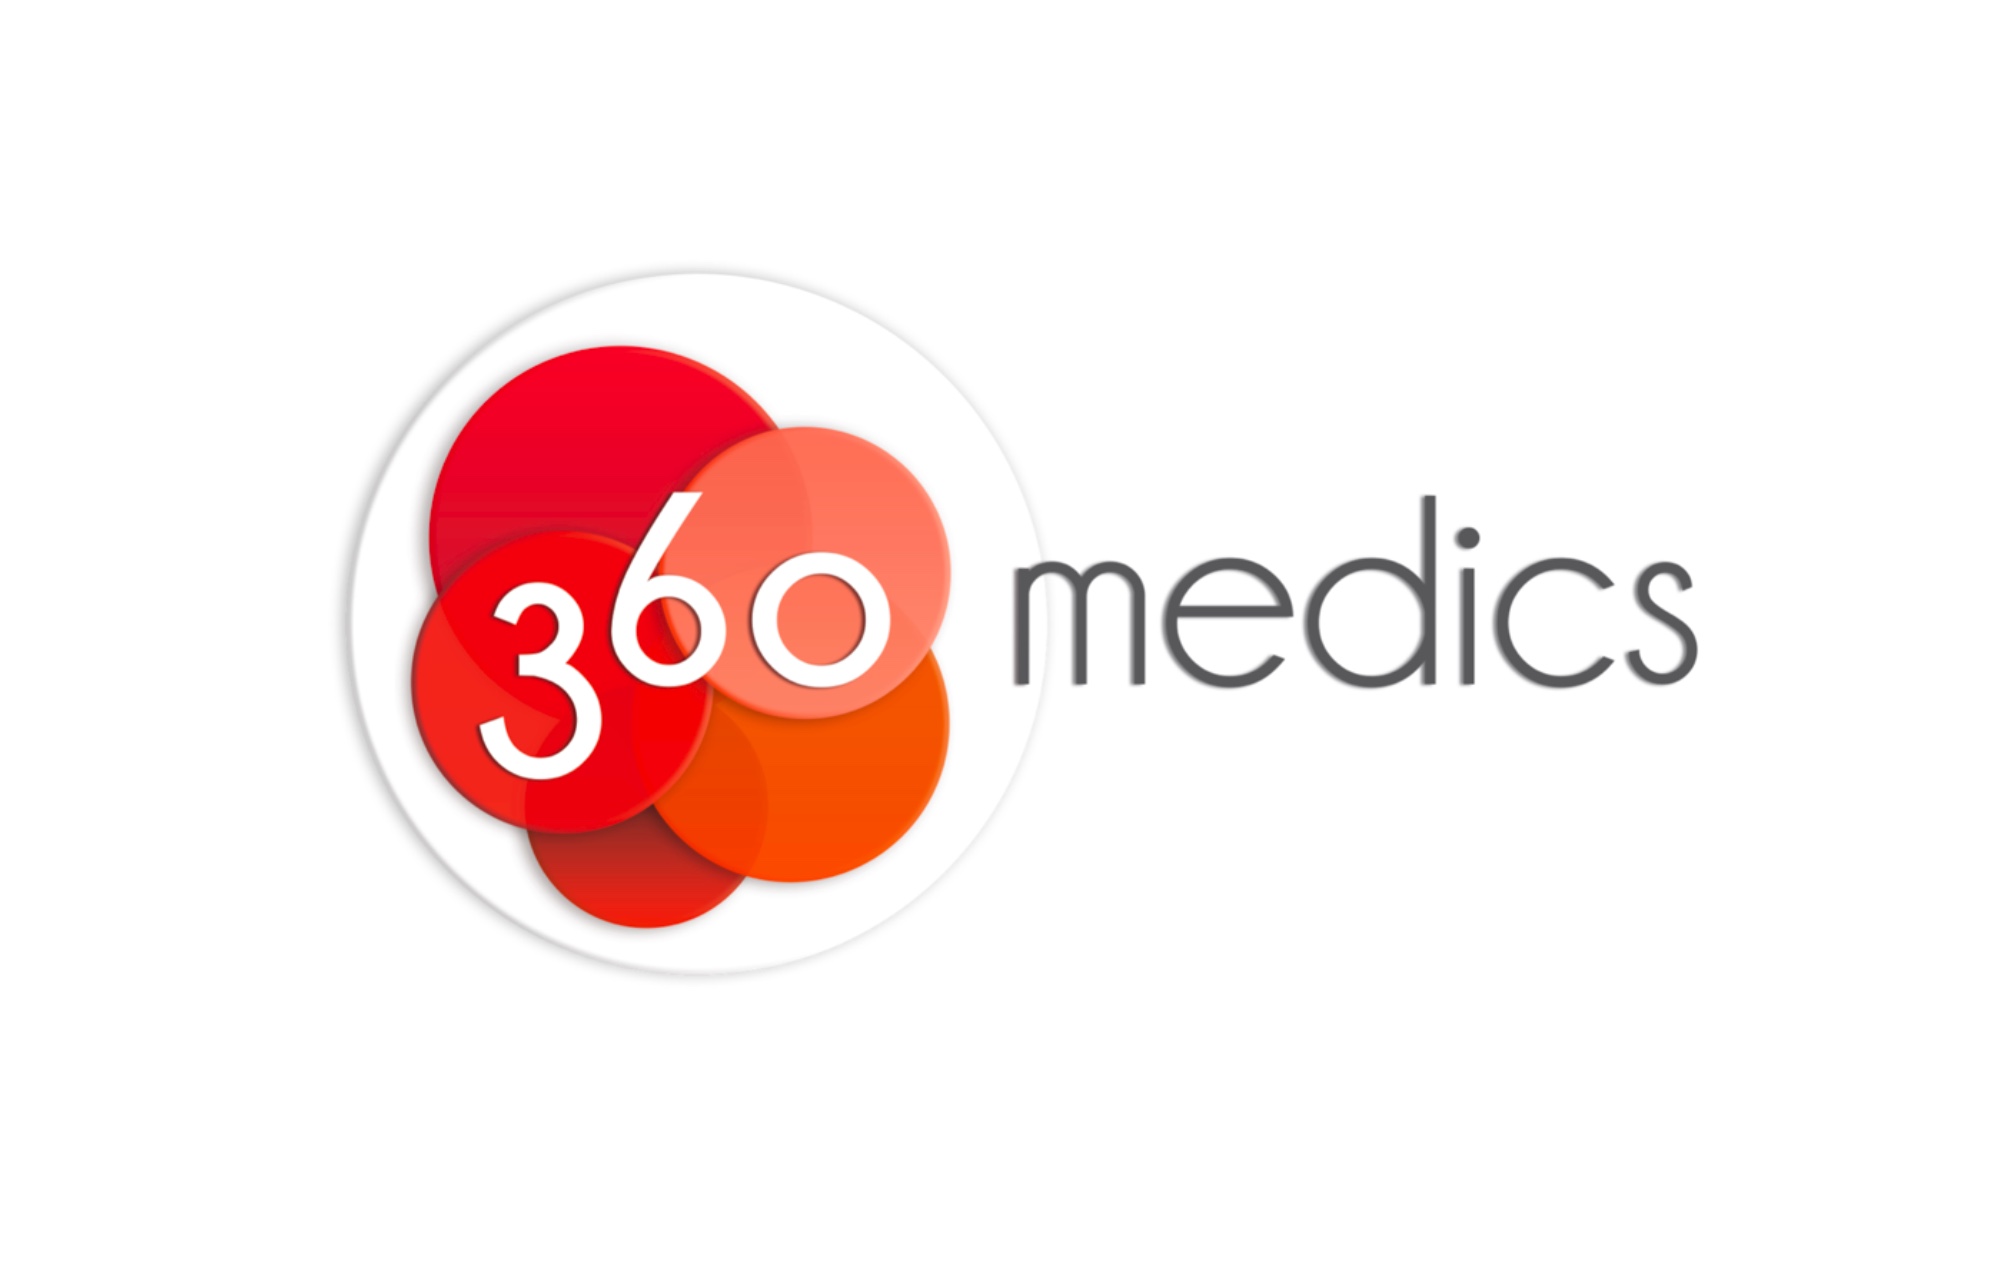 -360 medics